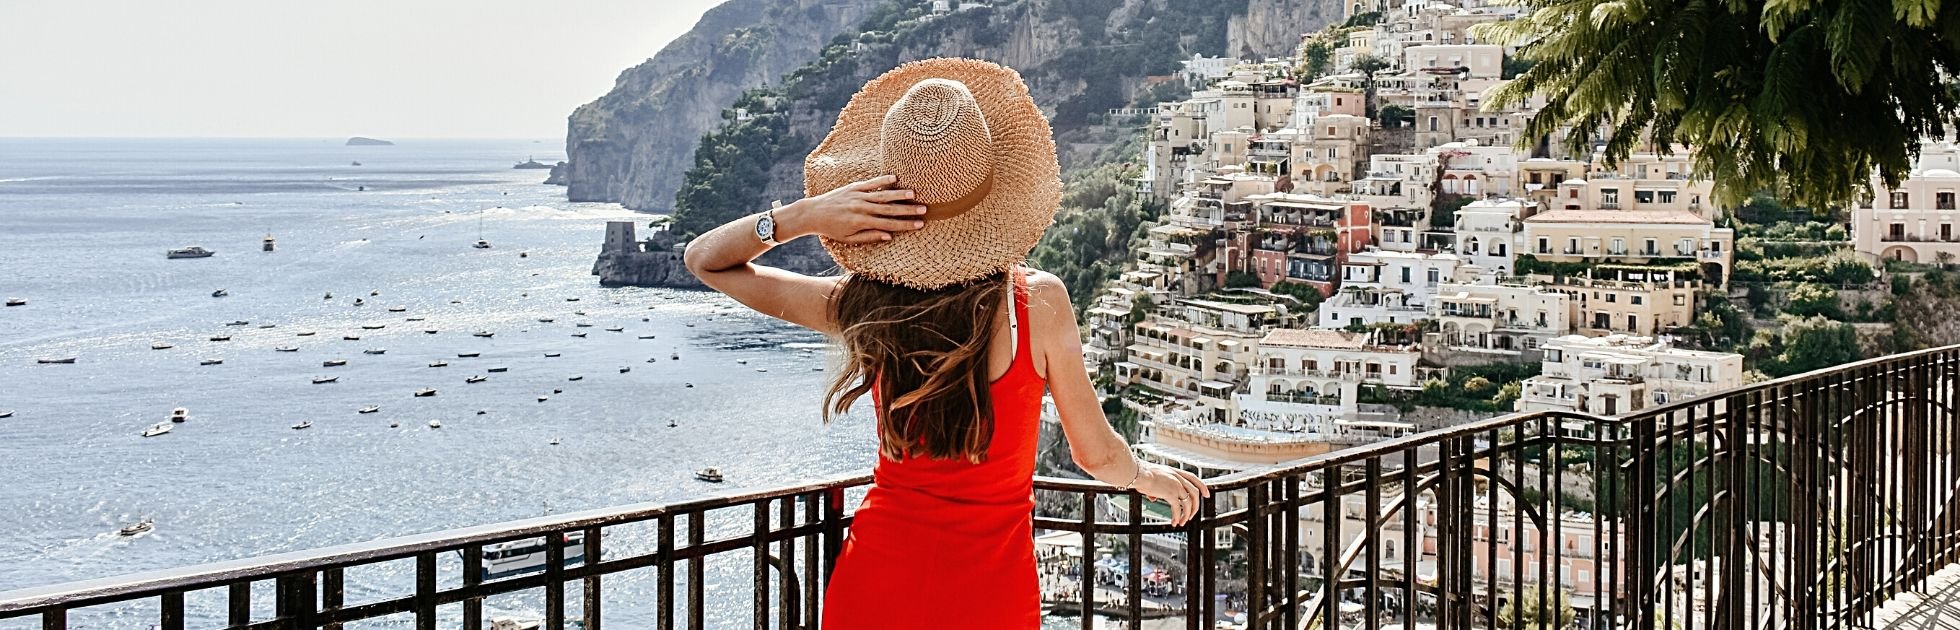 City-guide : L’essentiel pour découvrir Positano !